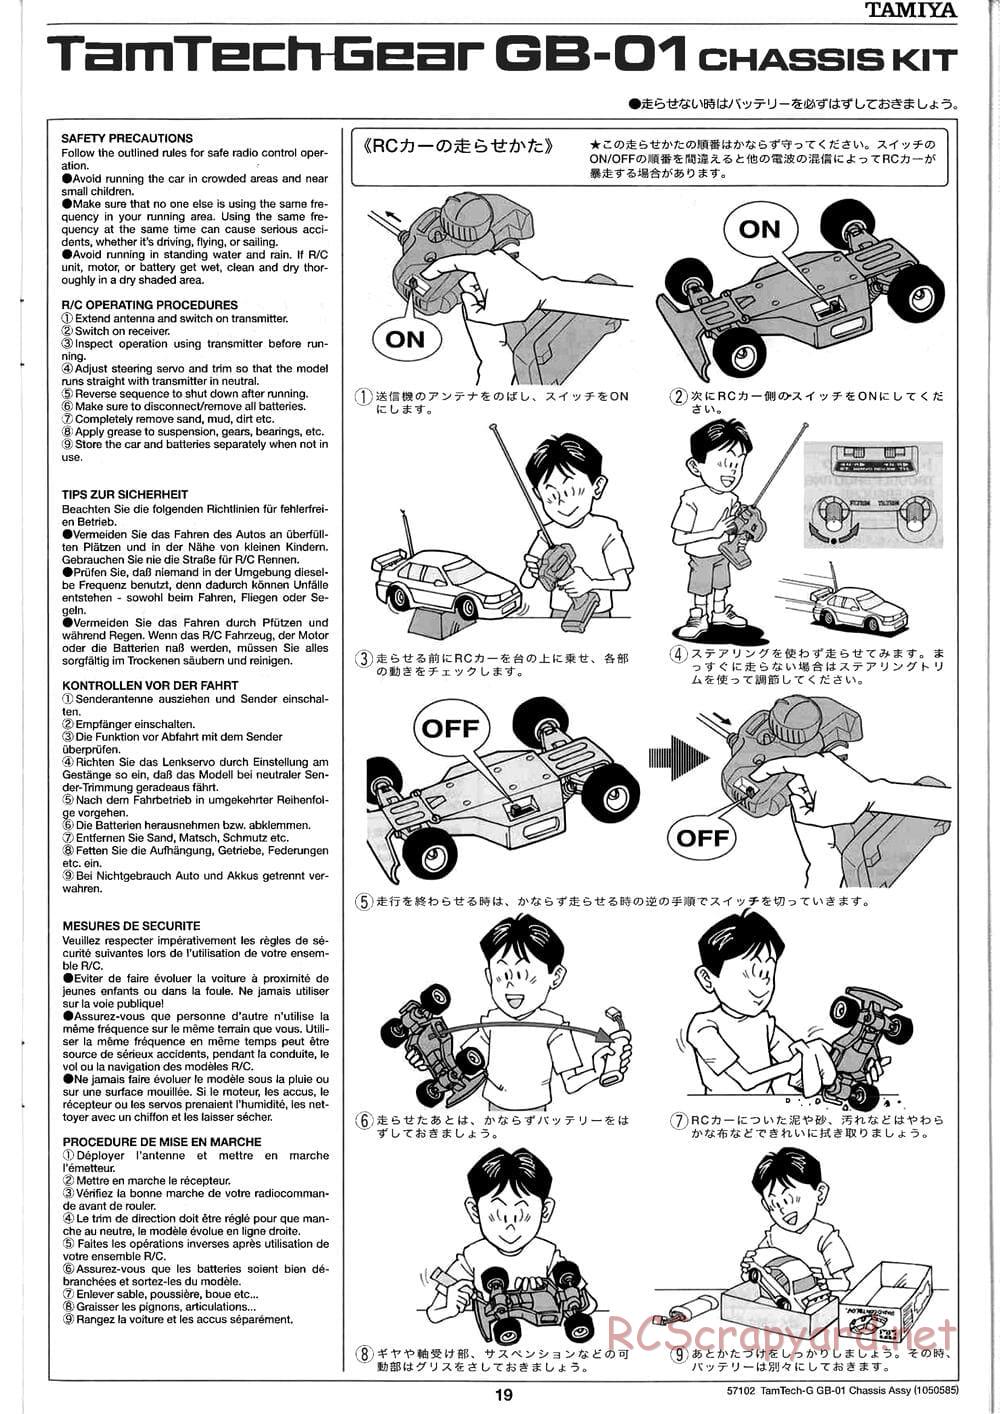 Tamiya - GB-01 Chassis - Manual - Page 19